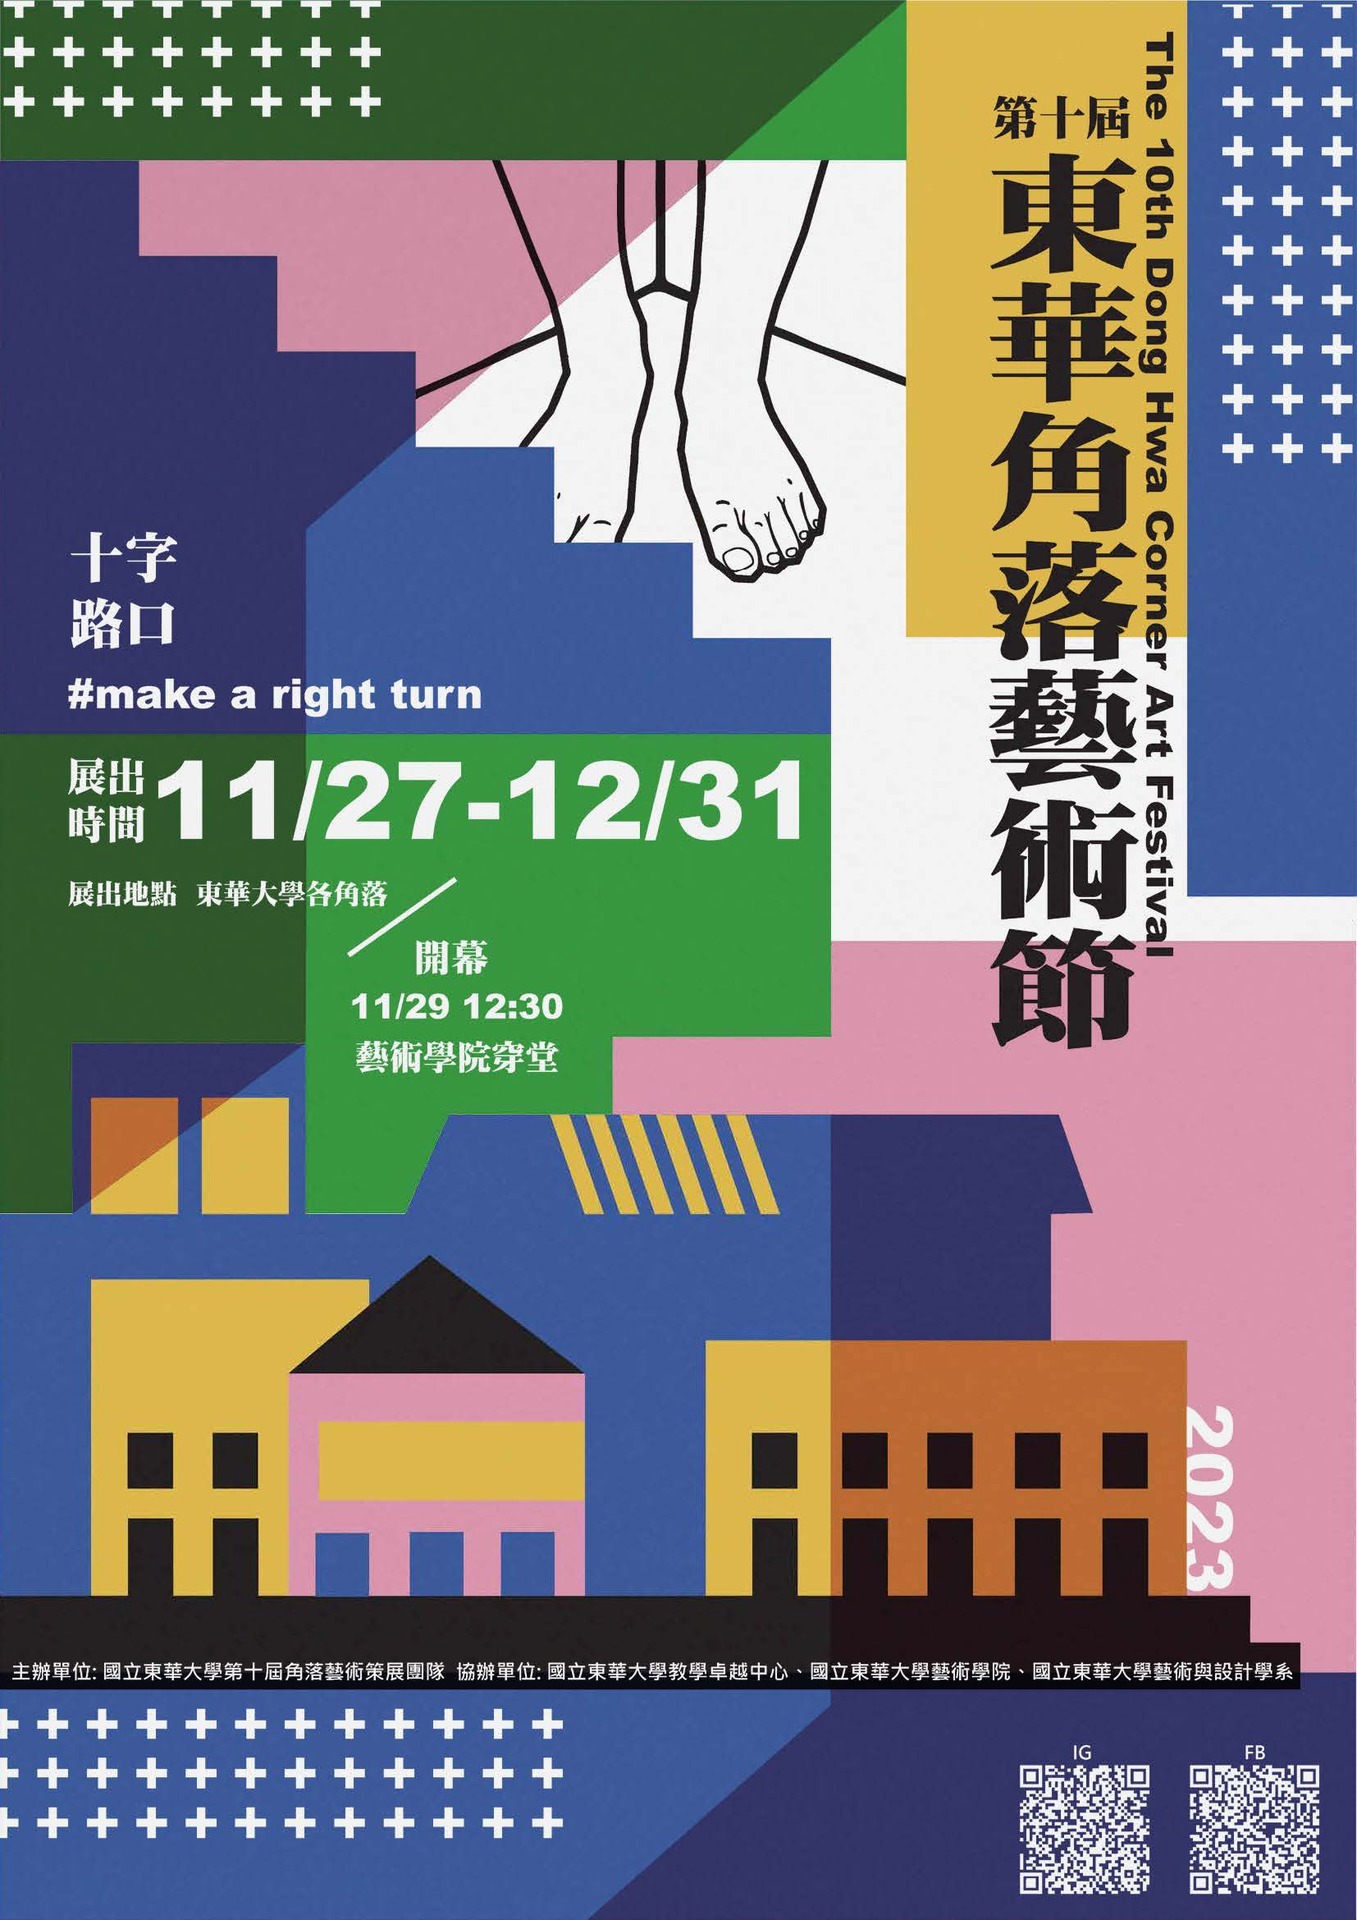 東華大學第十屆角落藝術節開幕及展覽宣傳海報